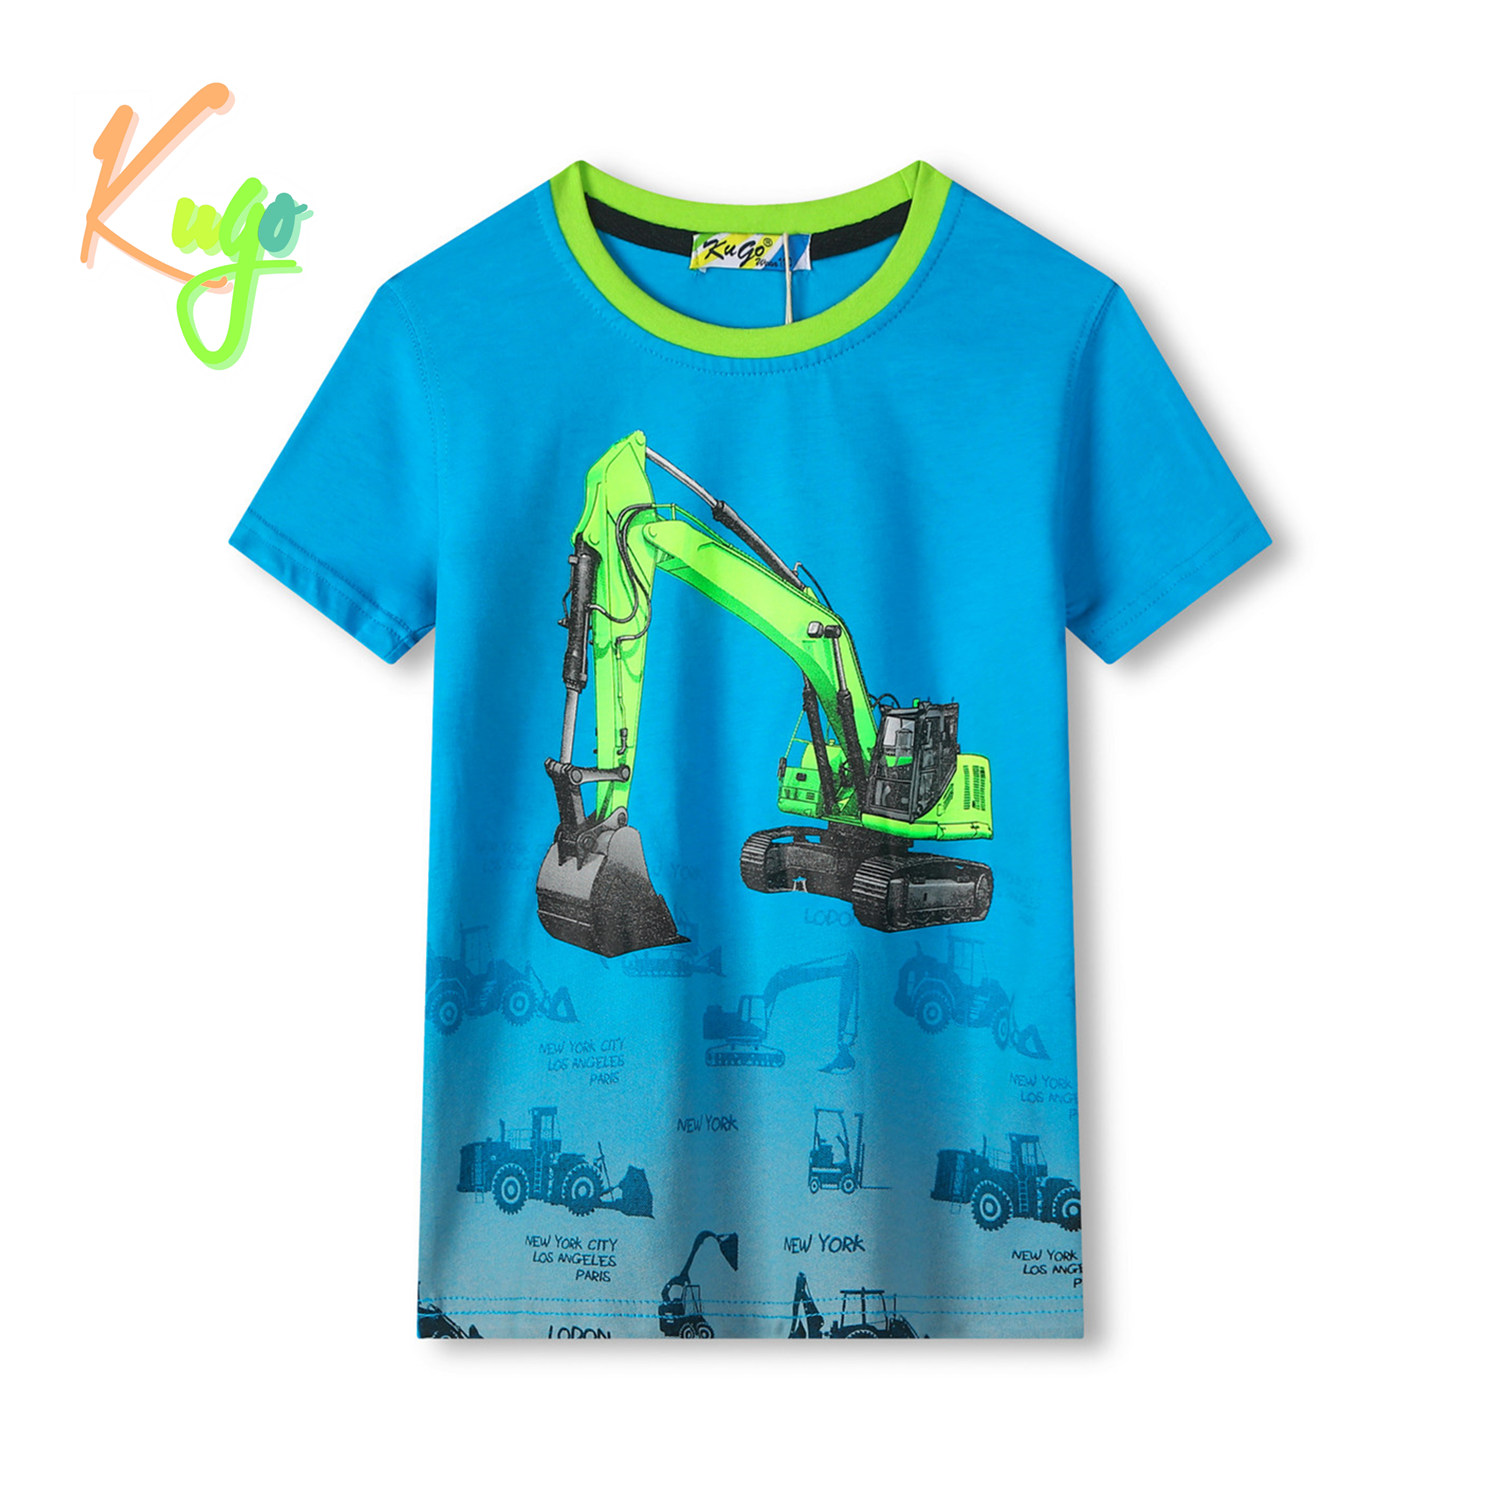 Chlapecké tričko - KUGO TM8570C, tyrkysová Barva: Tyrkysová, Velikost: 104